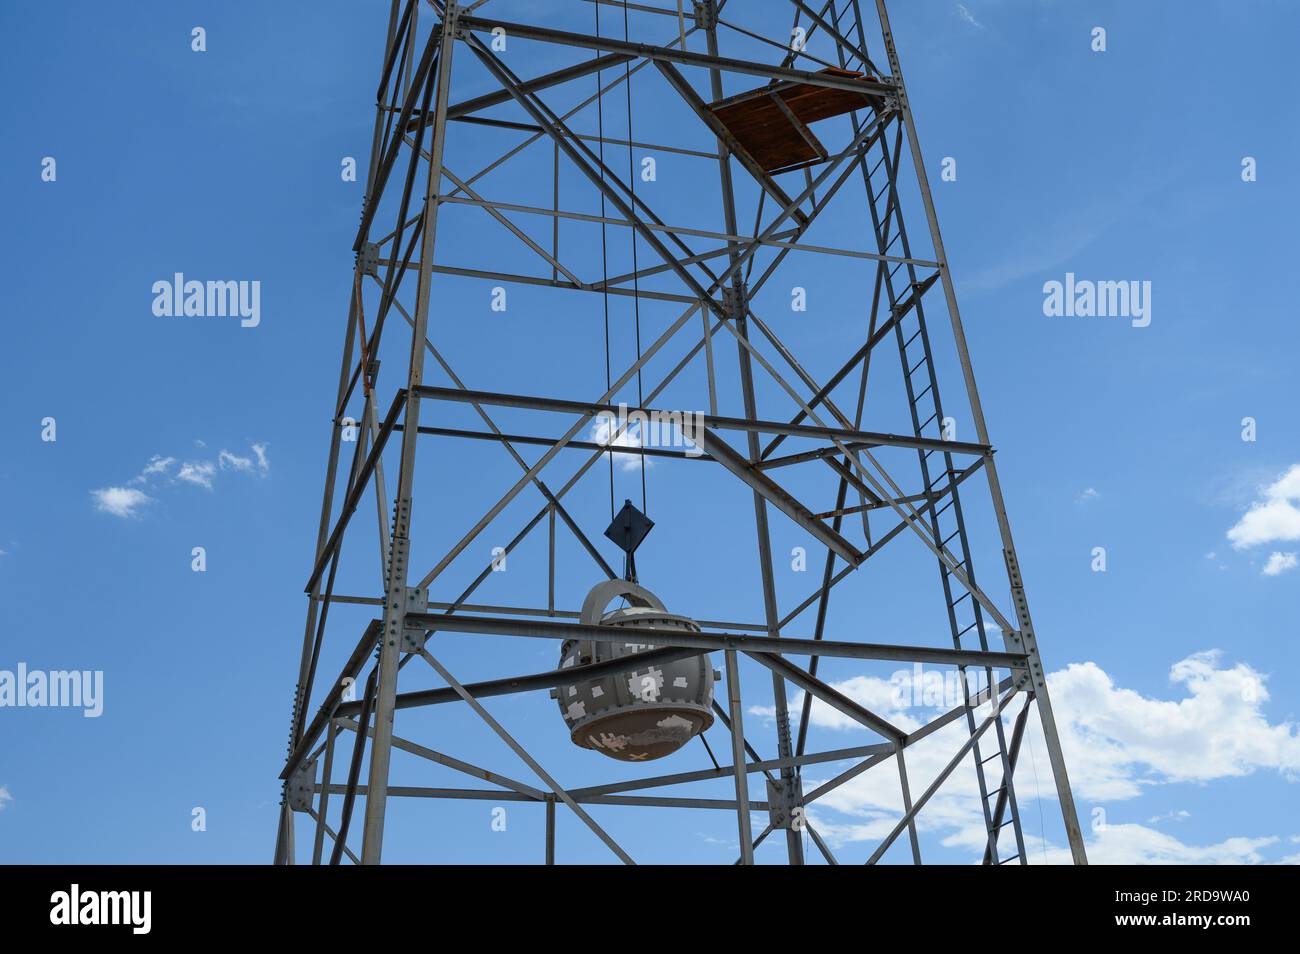 Una replica di “Gadget”, il primo dispositivo atomico testato, è appesa a una replica della torre d’acciaio di 100 metri usata durante il test presso il Trinity Site presso la White Sands Missile Range, New Mexico, è esposta al National Museum of Nuclear Science & History il 19 luglio, 2023 ad Albuquerque, New Mexico. Il film "Oppenheimer", diretto da Christopher Nolan, è previsto per l'uscita il 21 luglio 2023 e ha stimolato un aumento del turismo atomico in cui i visitatori imparano a conoscere l'età atomica visitando siti significativi nella storia atomica e musei con artefatti nucleari secondo un recente muro Foto Stock